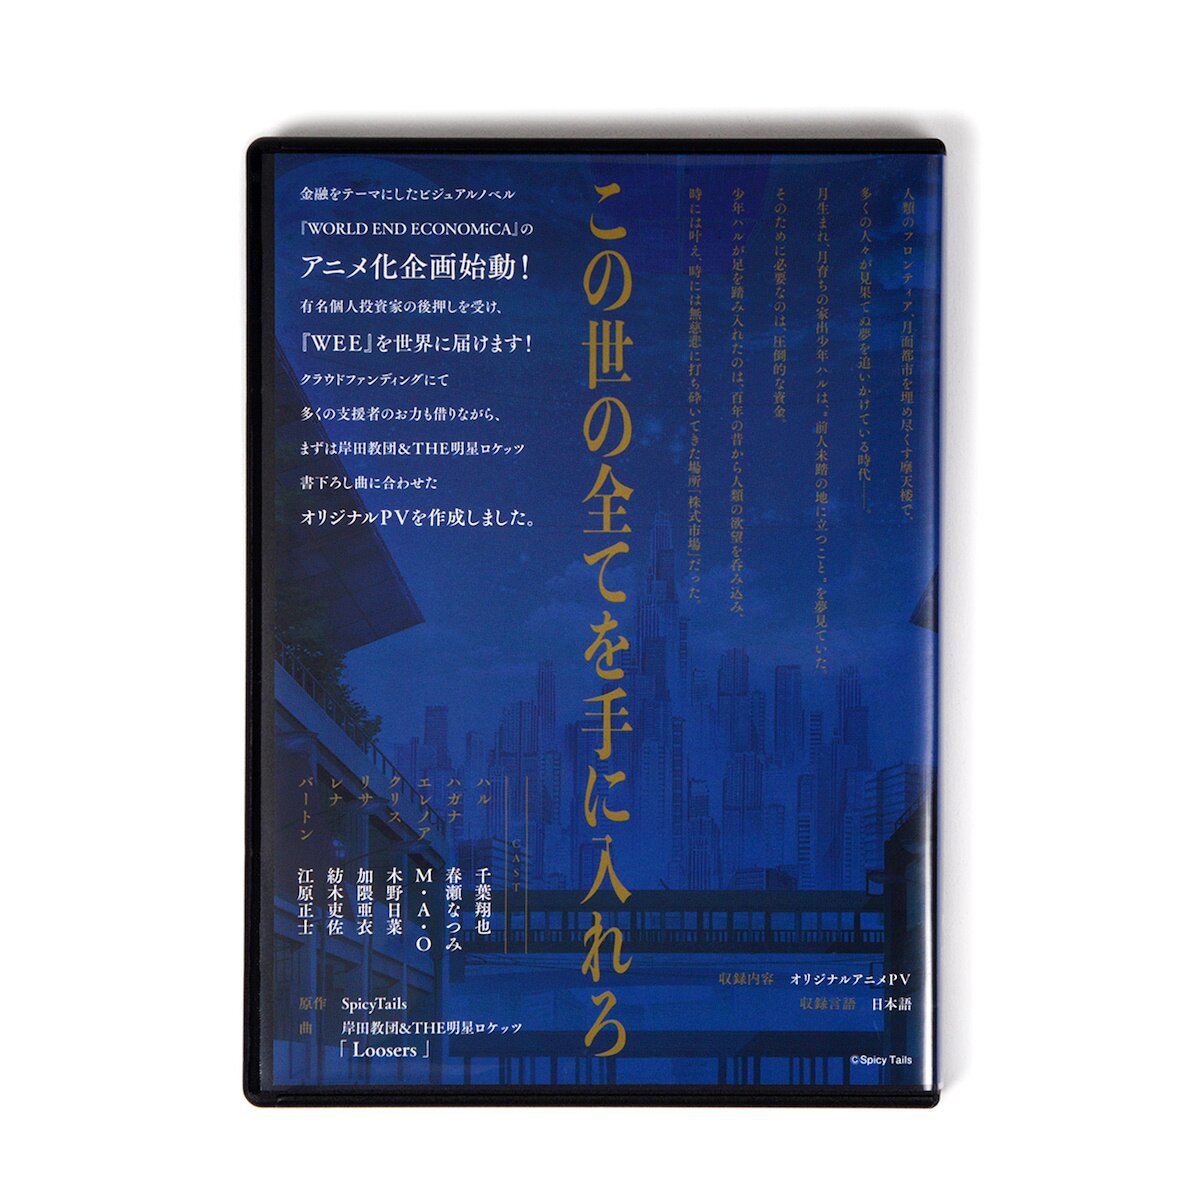 WORLD END ECONOMiCA Commentary Book - Tokyo Otaku Mode (TOM)